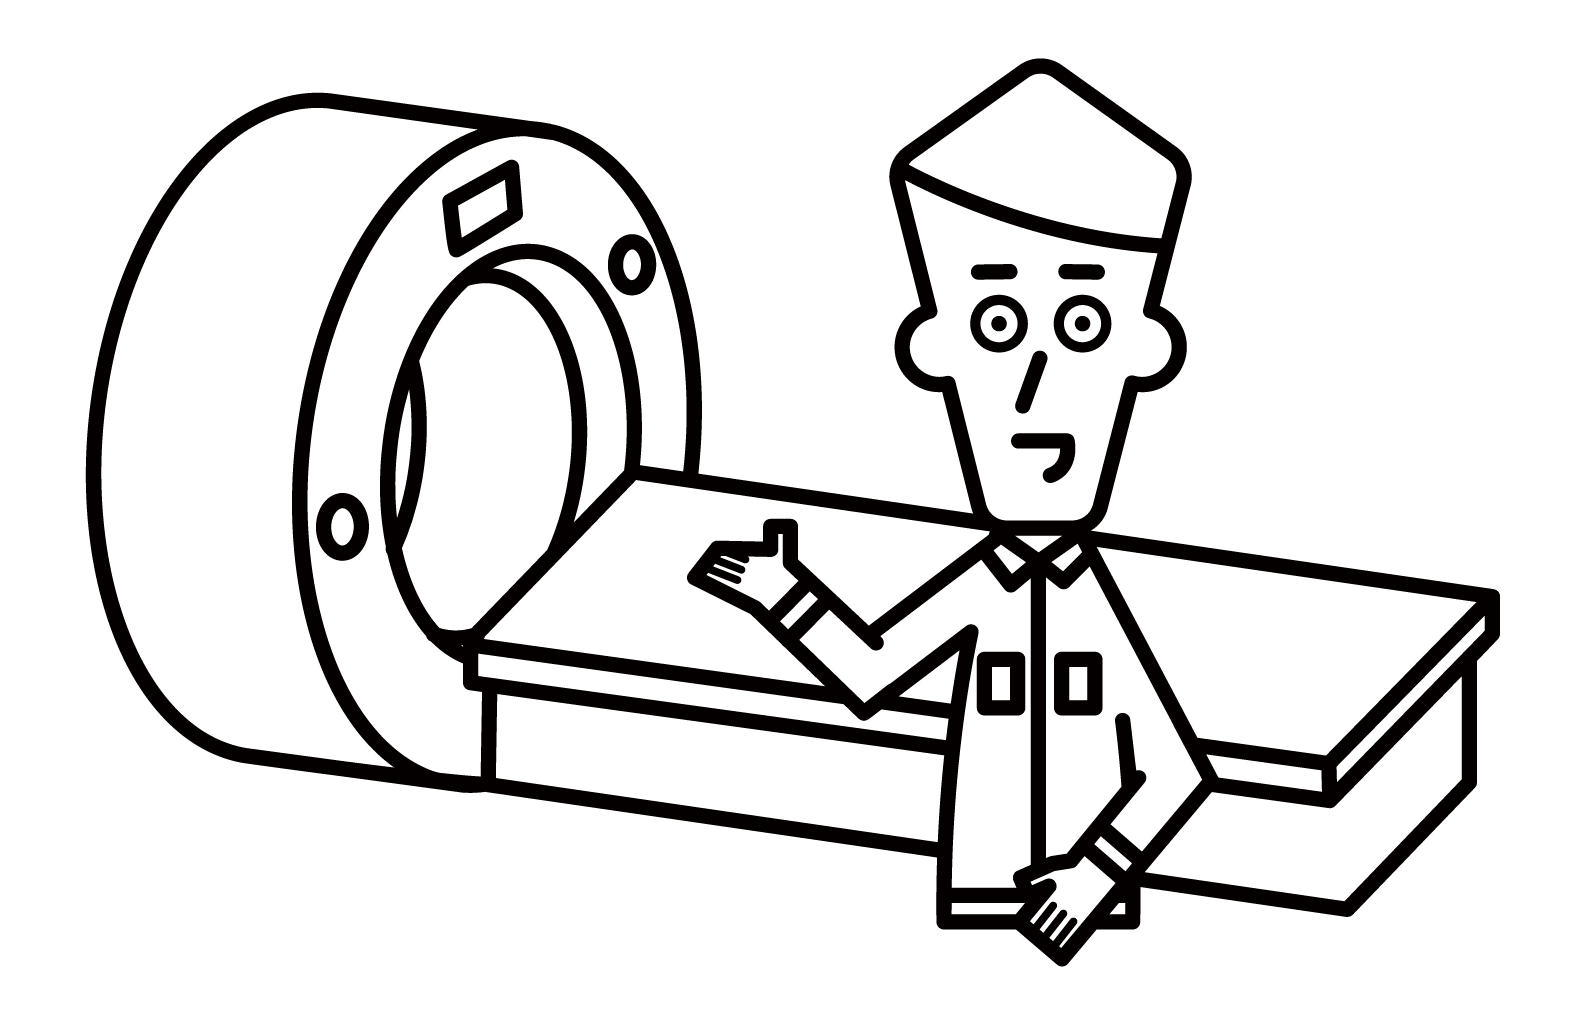 醫療器械製造商員工（男性）的插圖